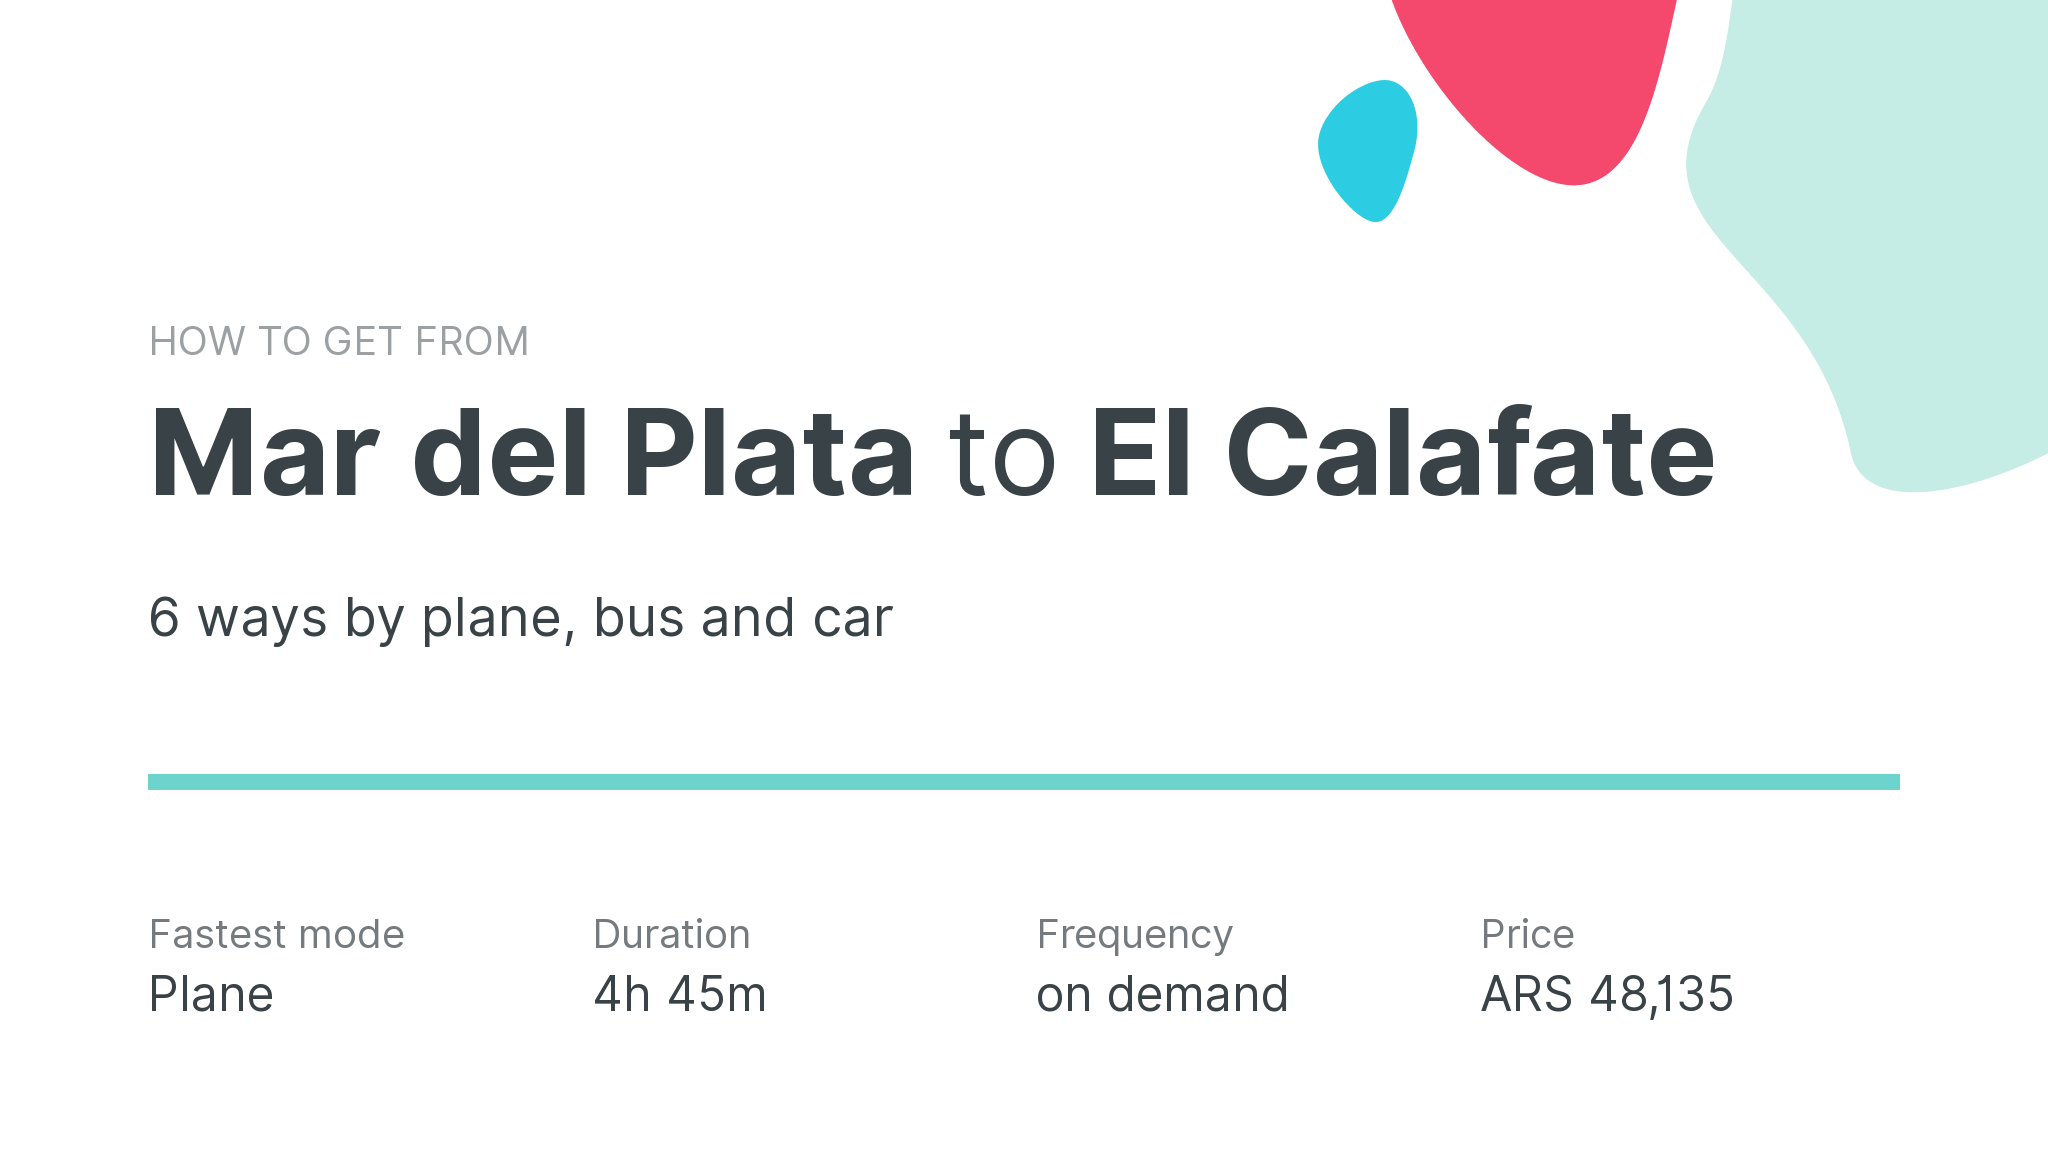 How do I get from Mar del Plata to El Calafate